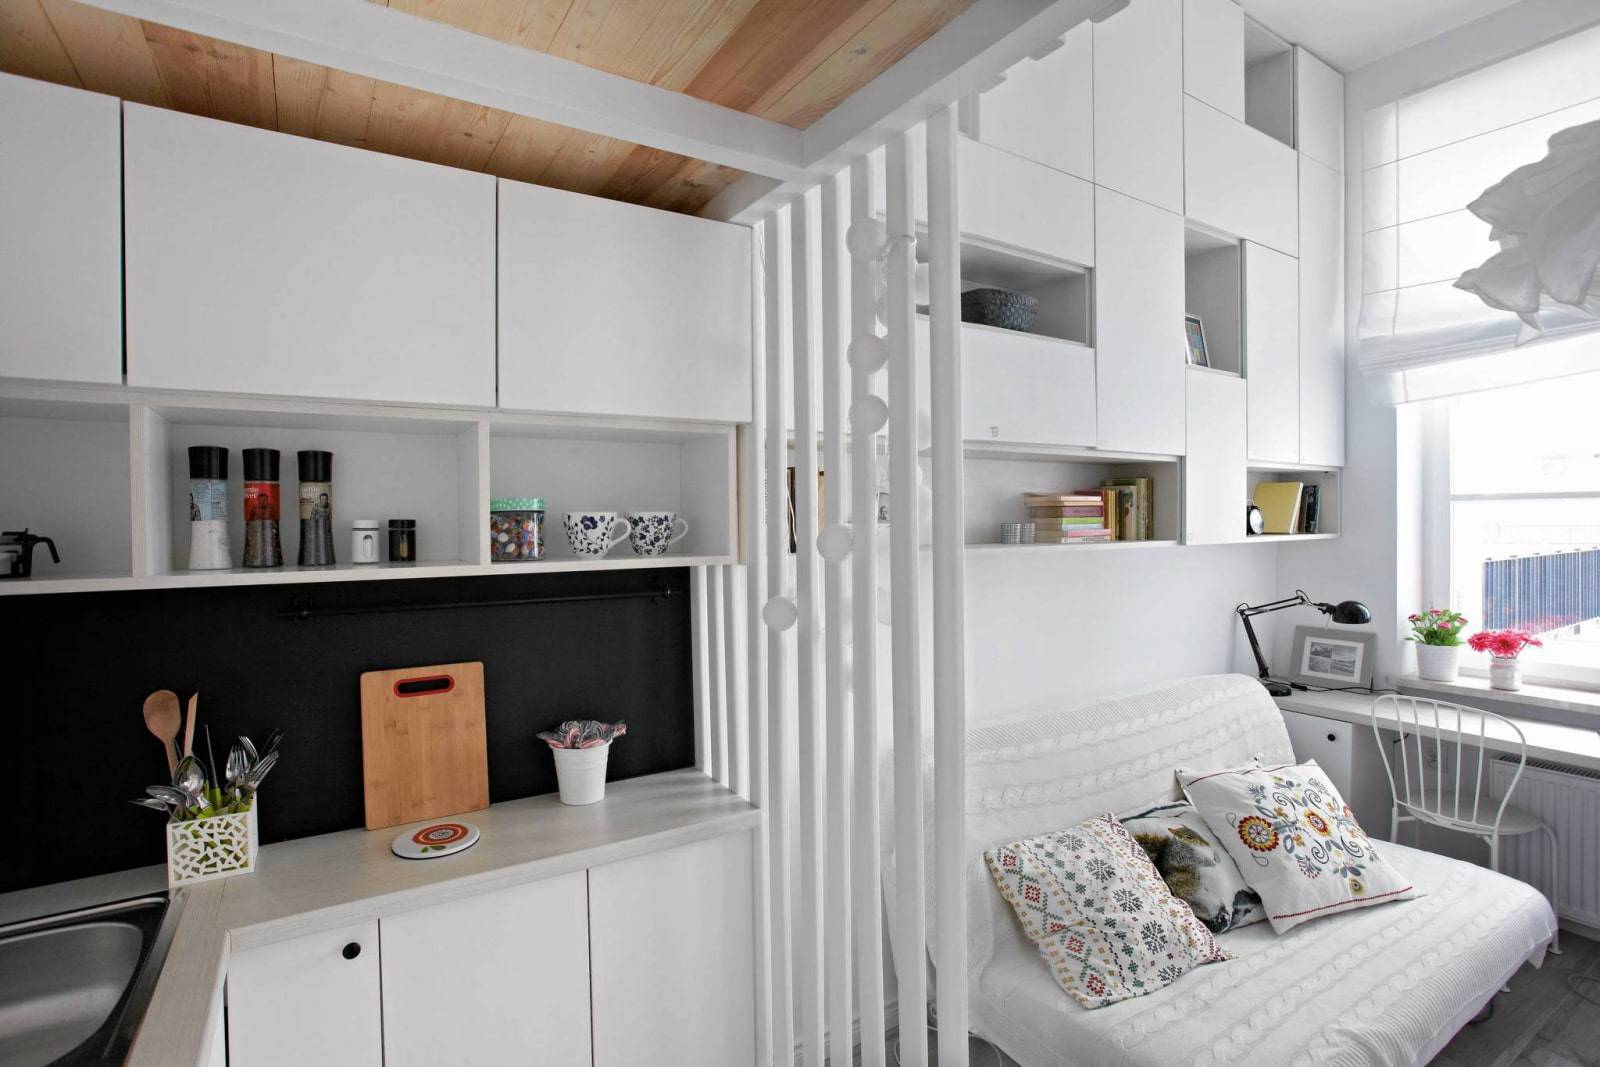 Практичная кухня-спальня: недоразумение от дизайнеров или реальность